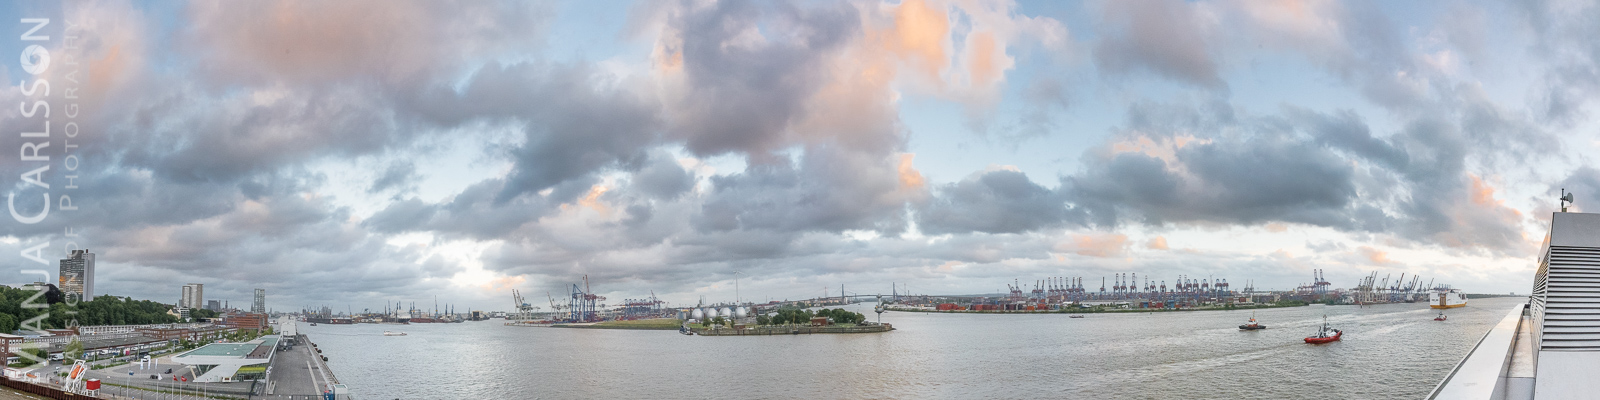 Blick vom Dockland auf den Hamburger Hafen - Panorama aus 12 Fotos 